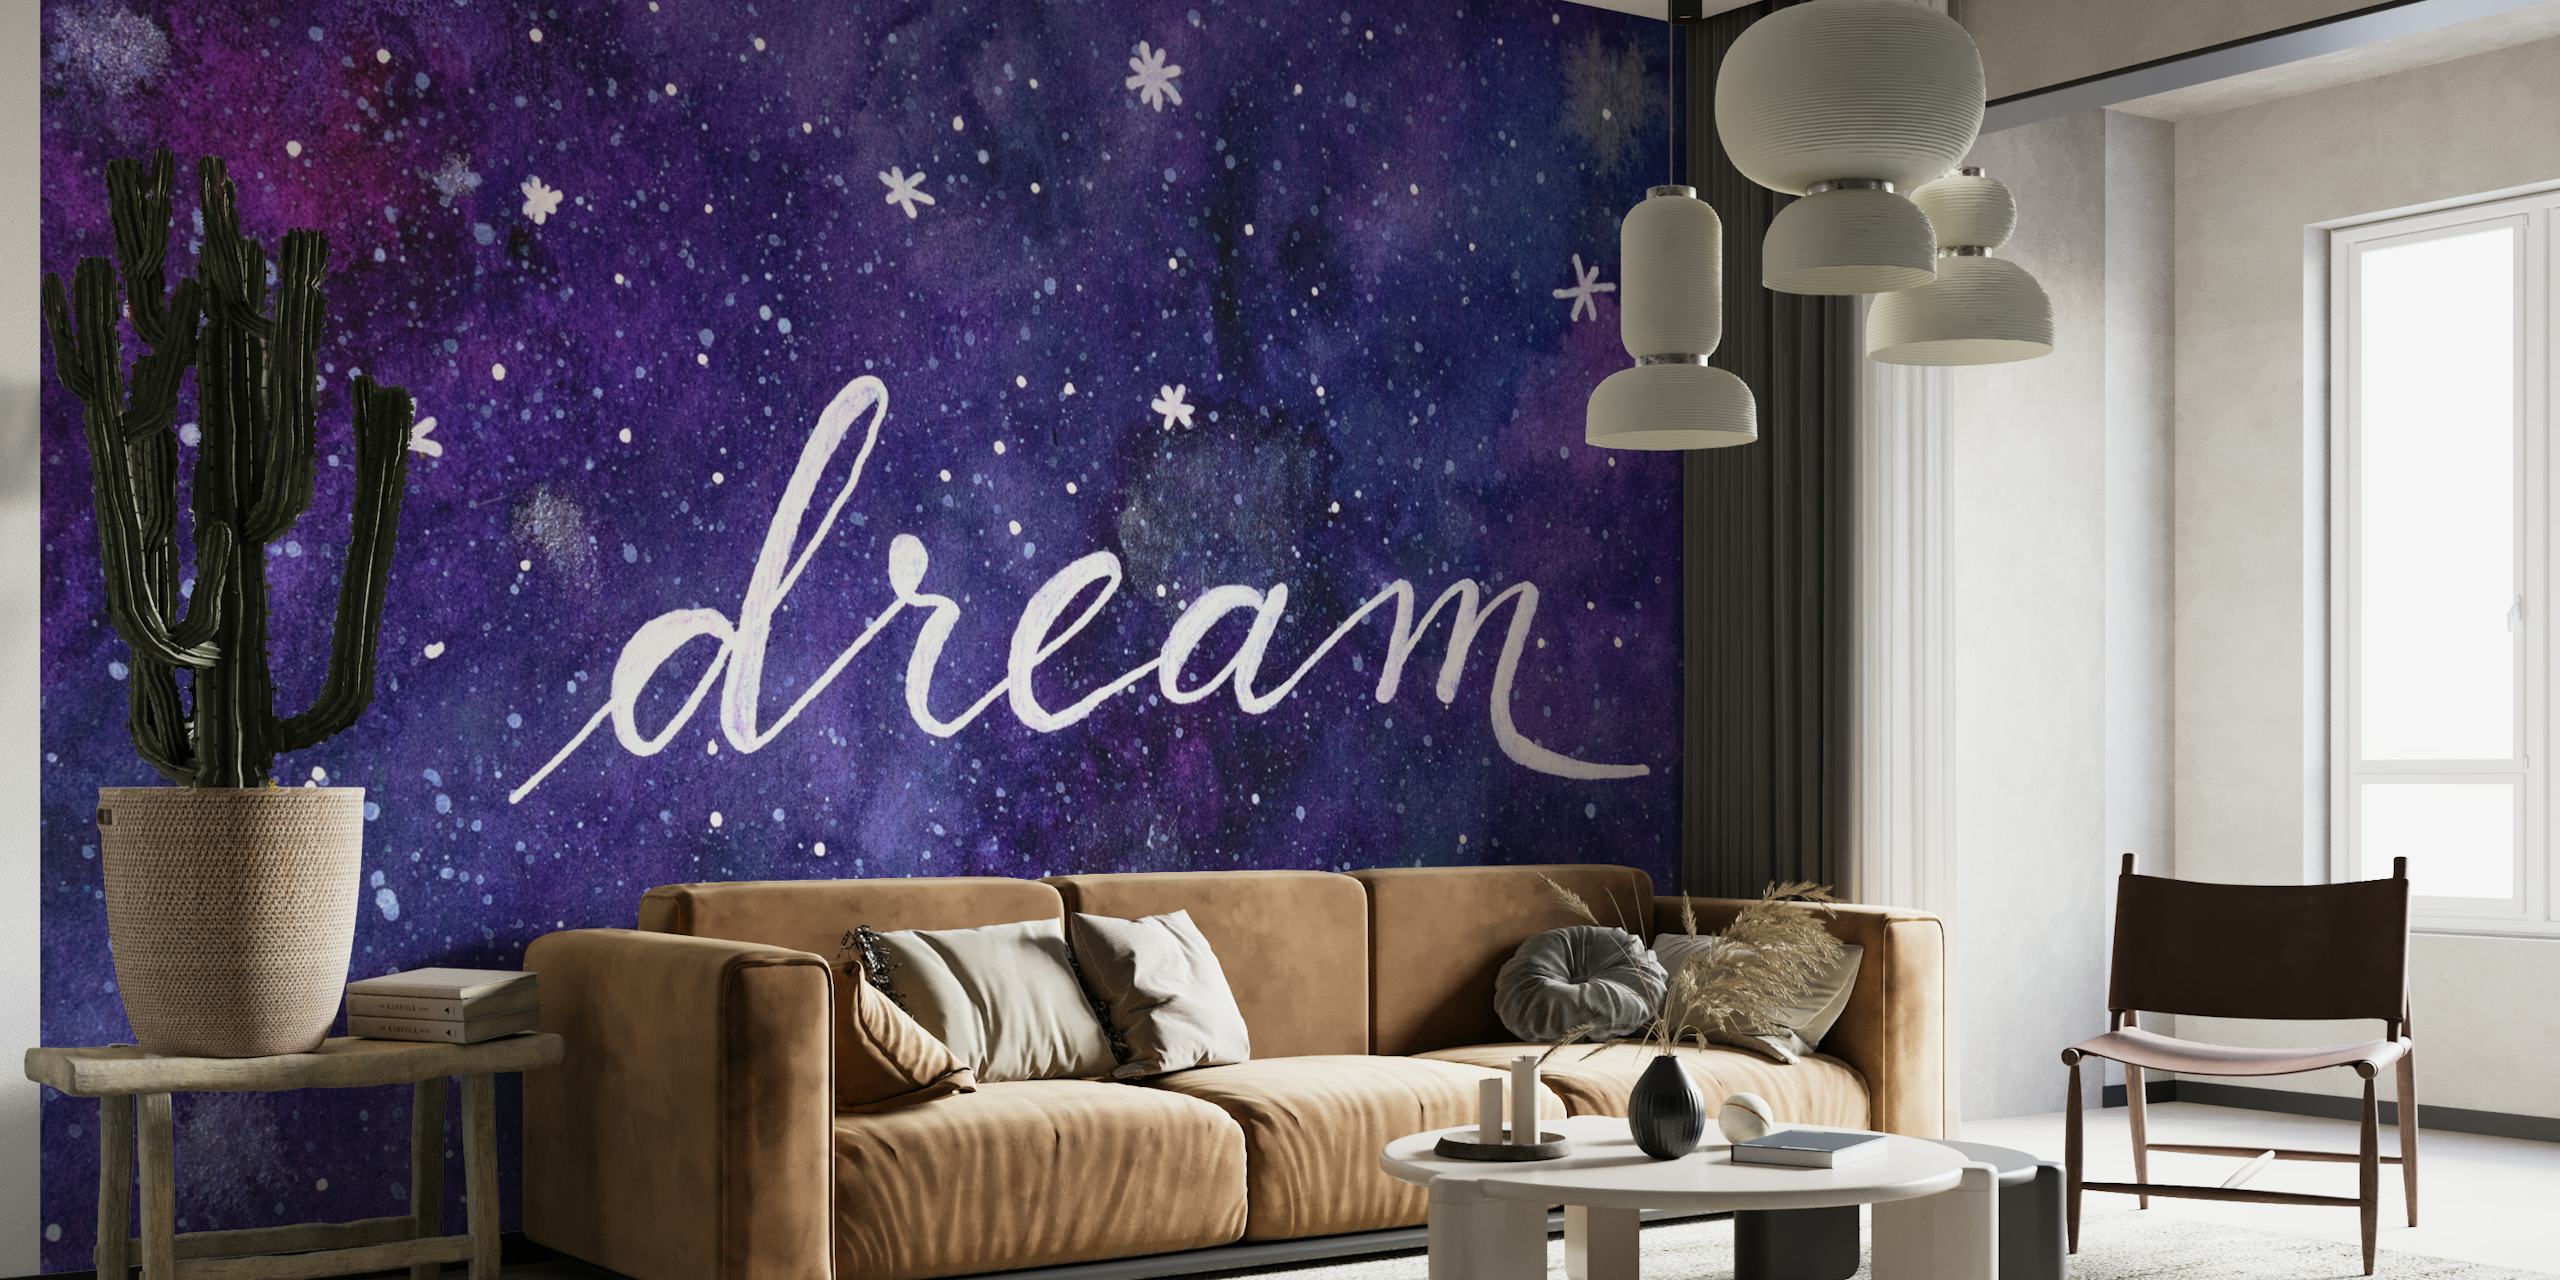 Dream galaxy papel pintado